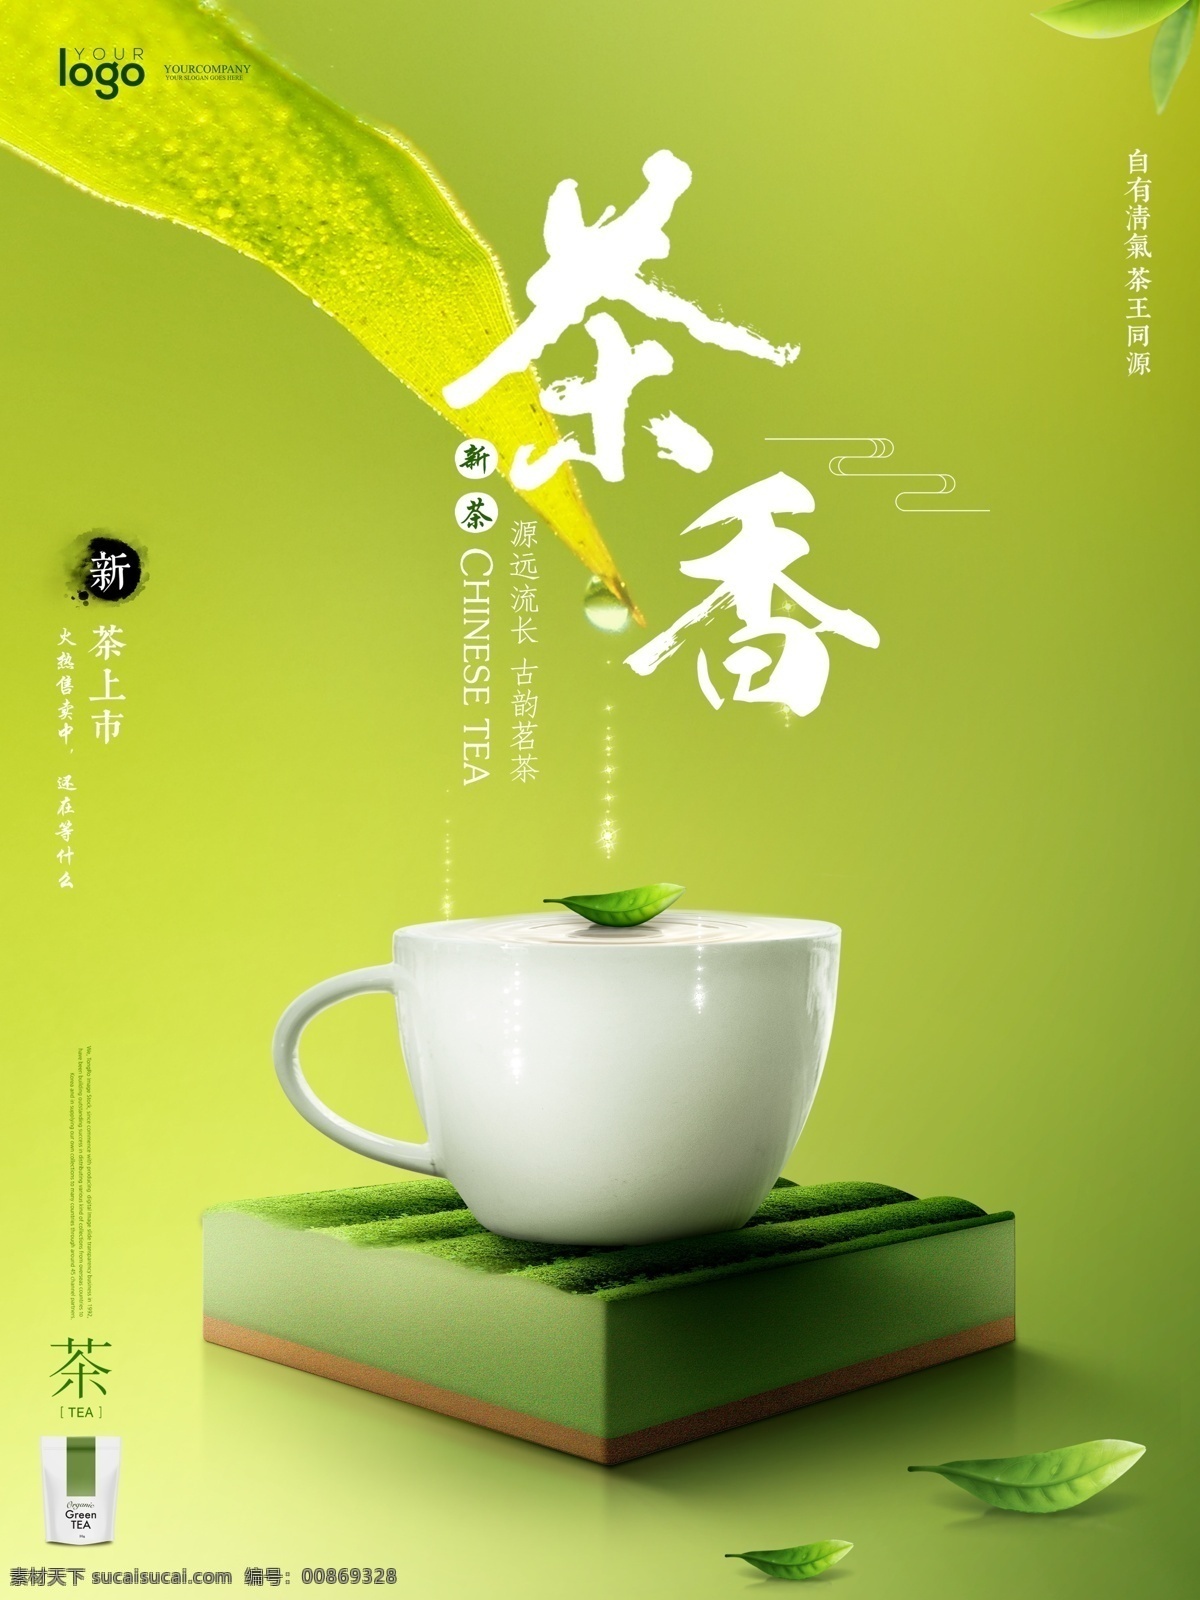 绿色 渐变 背景 创意 茶园 茶杯 合成 茶饮 茶叶 新品上市 清新 创意海报 茶 茶香 小清新 绿色茶园 创意合成 新茶上市 清新绿色 绿色渐变 茶饮料 创意排版 精美版式 海报 美食餐饮 微信圈图海报